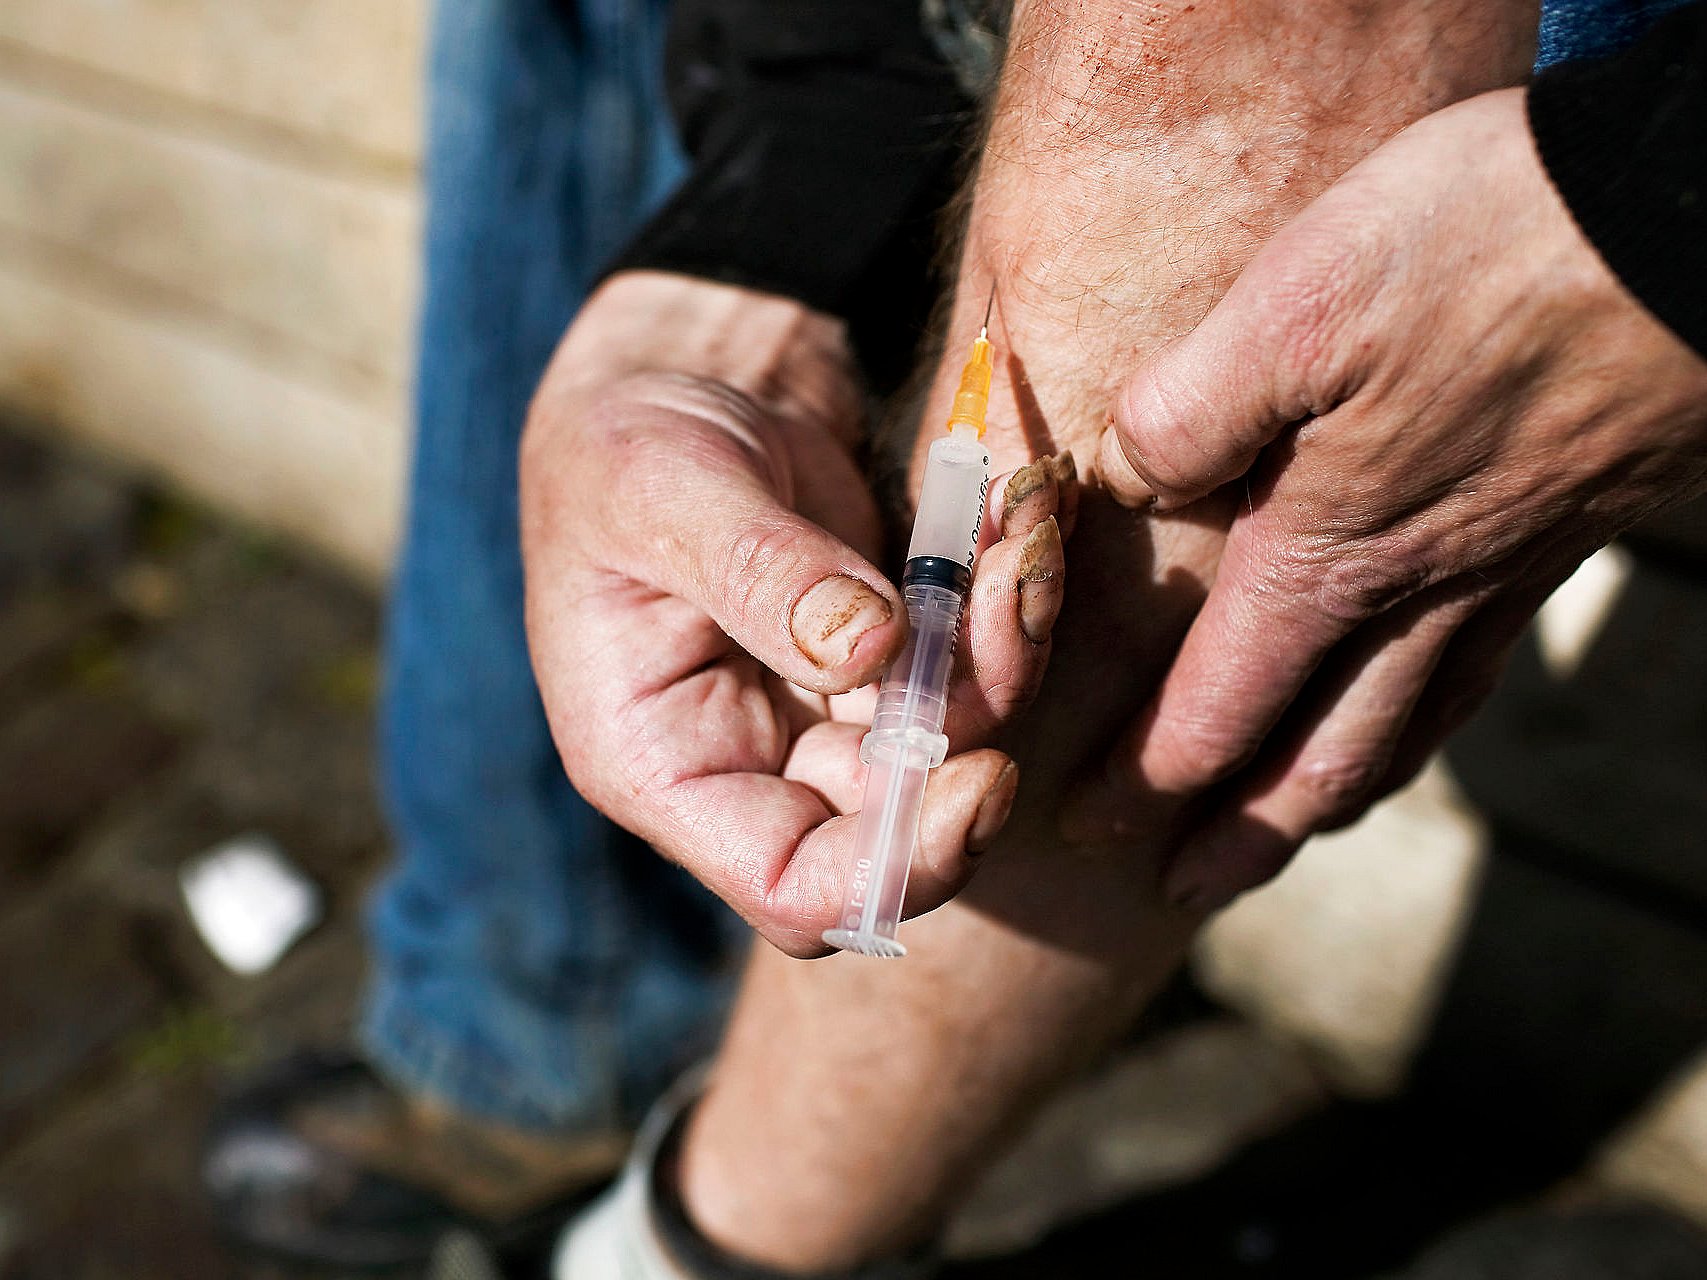 Lukkede grænser holder narkotika ude: Flere misbrugere skal behandles abstinenser | 2 Kosmopol